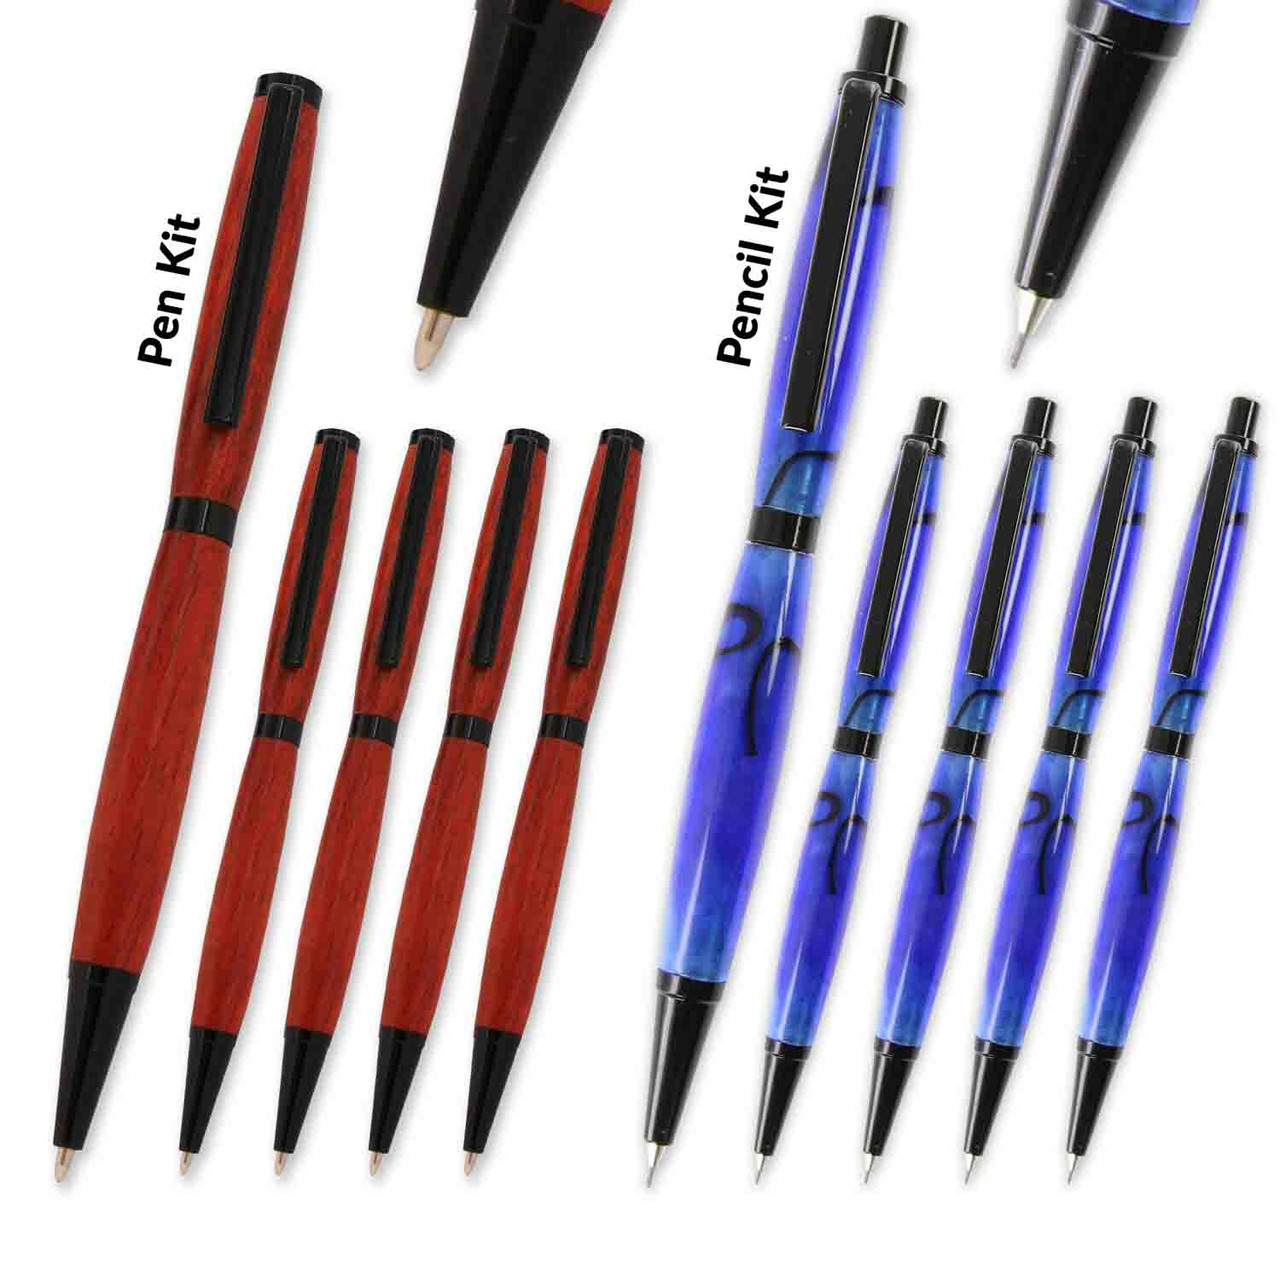 Legacy, Slimline Pen and Pencil Kit Combo Set, Black Chrome, 10 Pack